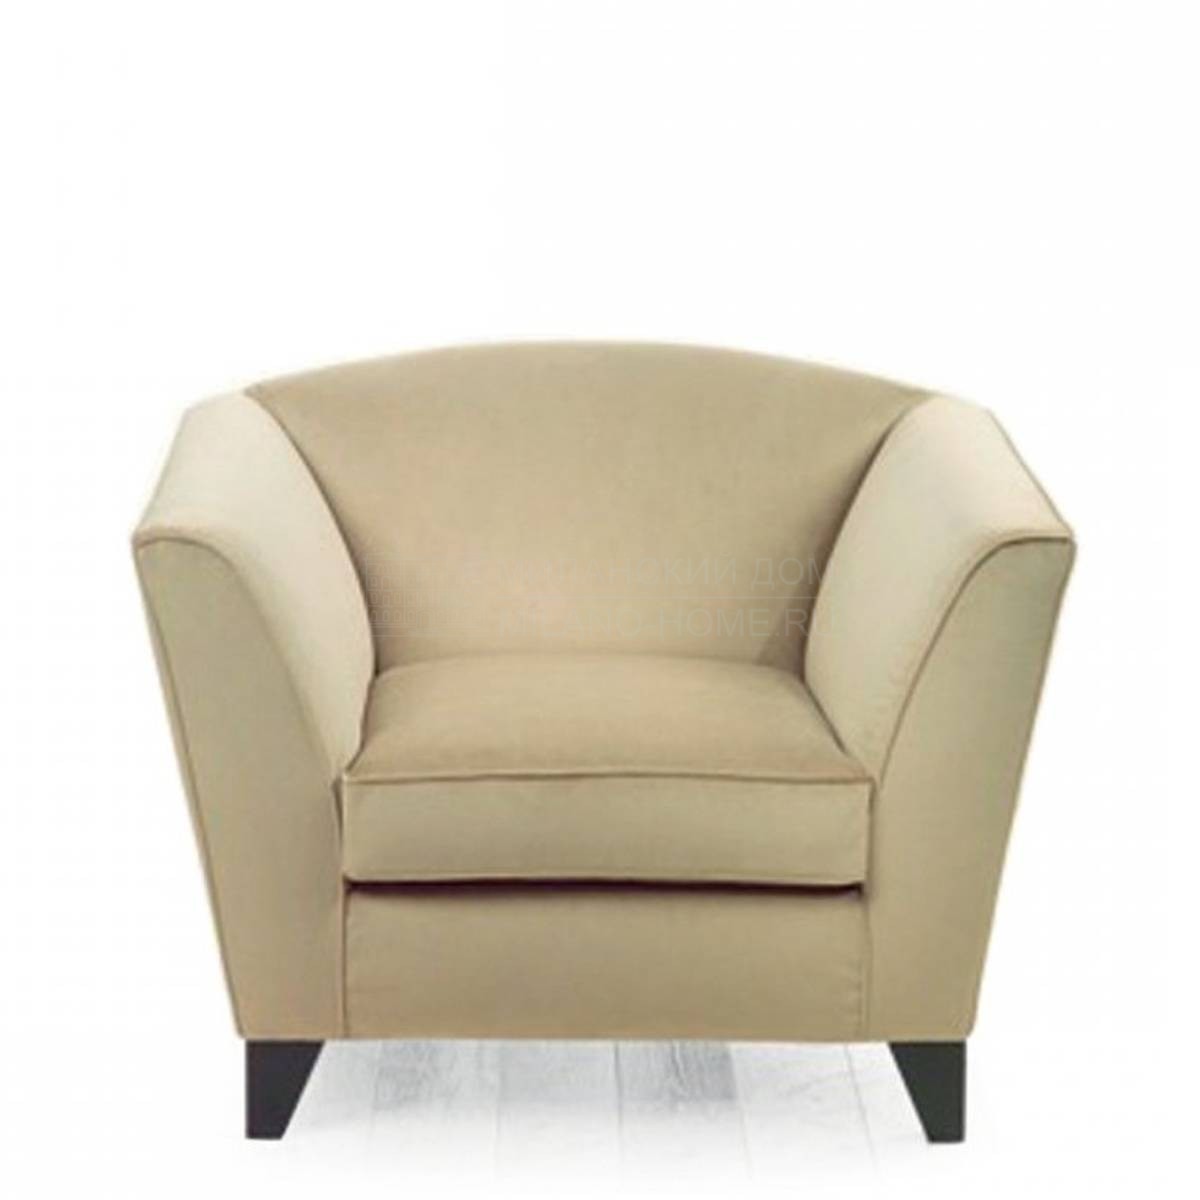 Кресло Azhar armchair из Италии фабрики MARIONI